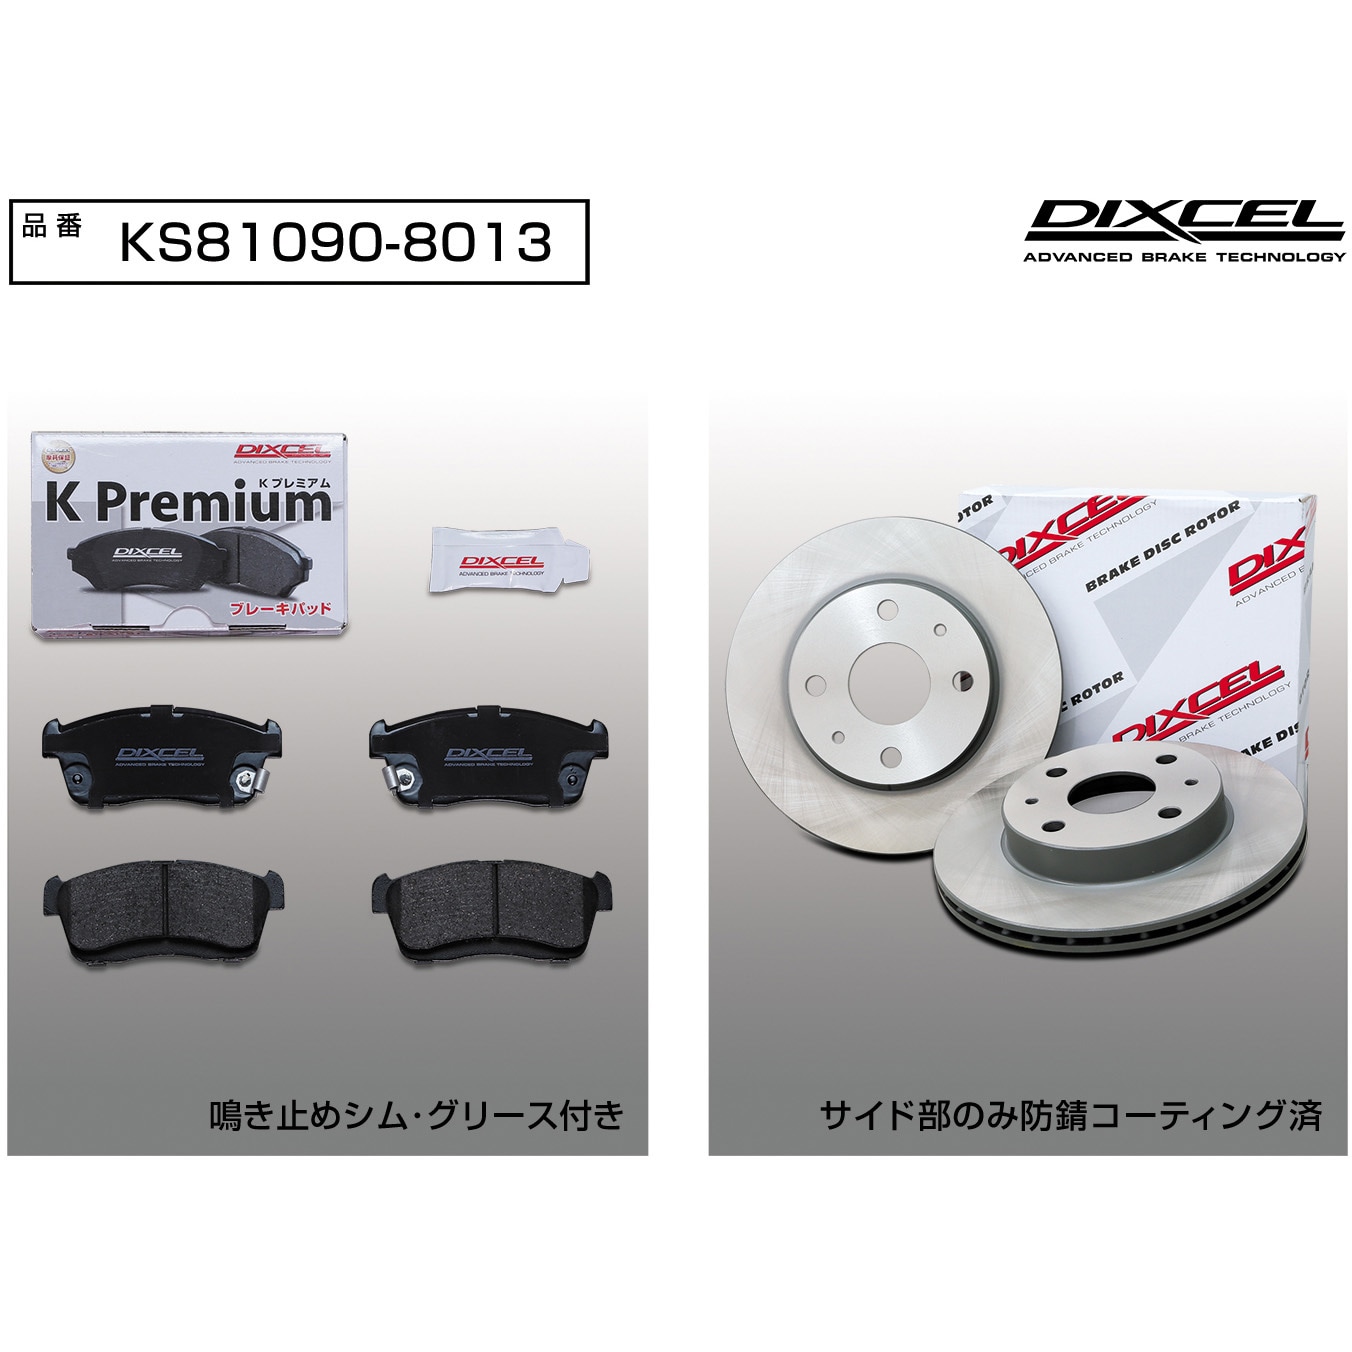 KS81090-8013 ディクセル ブレーキディスク ブレーキパッド セット 